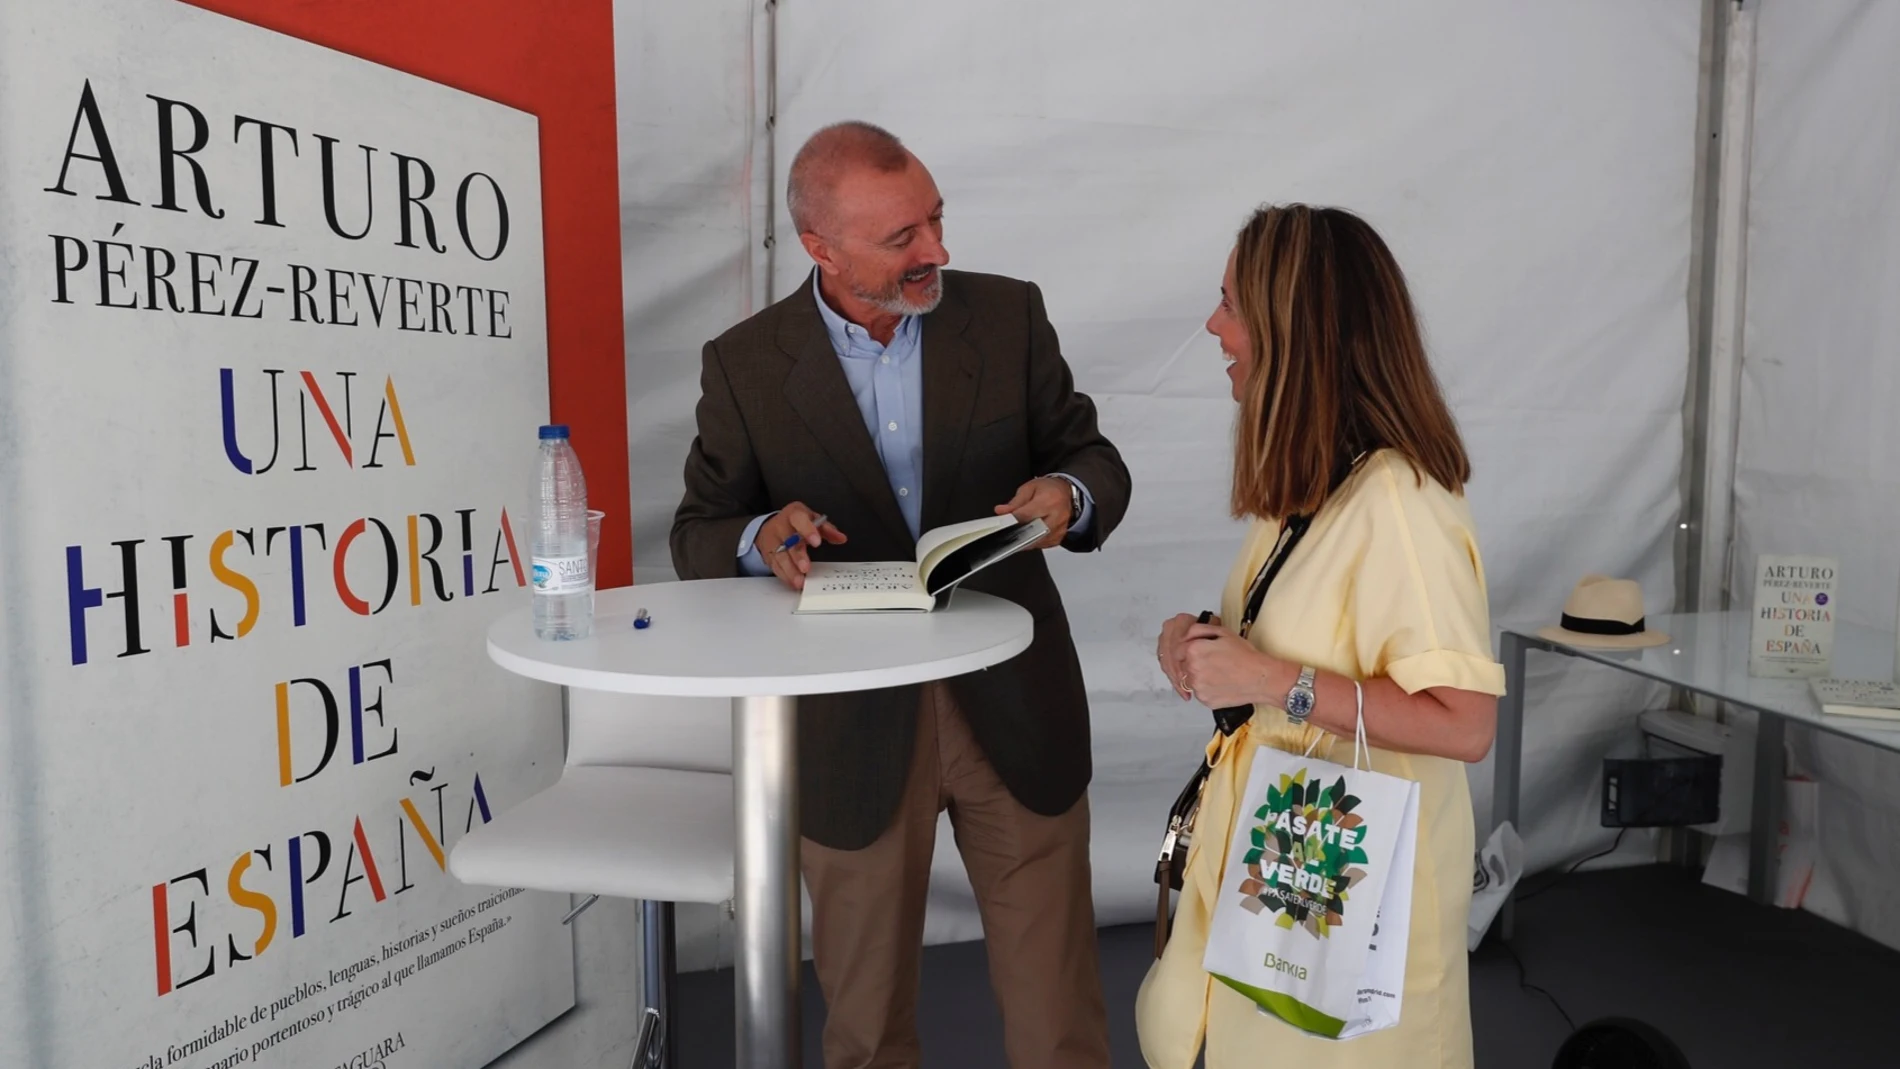 Arturo Pérez-Reverte, estilográfica en mano, dispuesto a rubricar uno de sus libros a una lectora